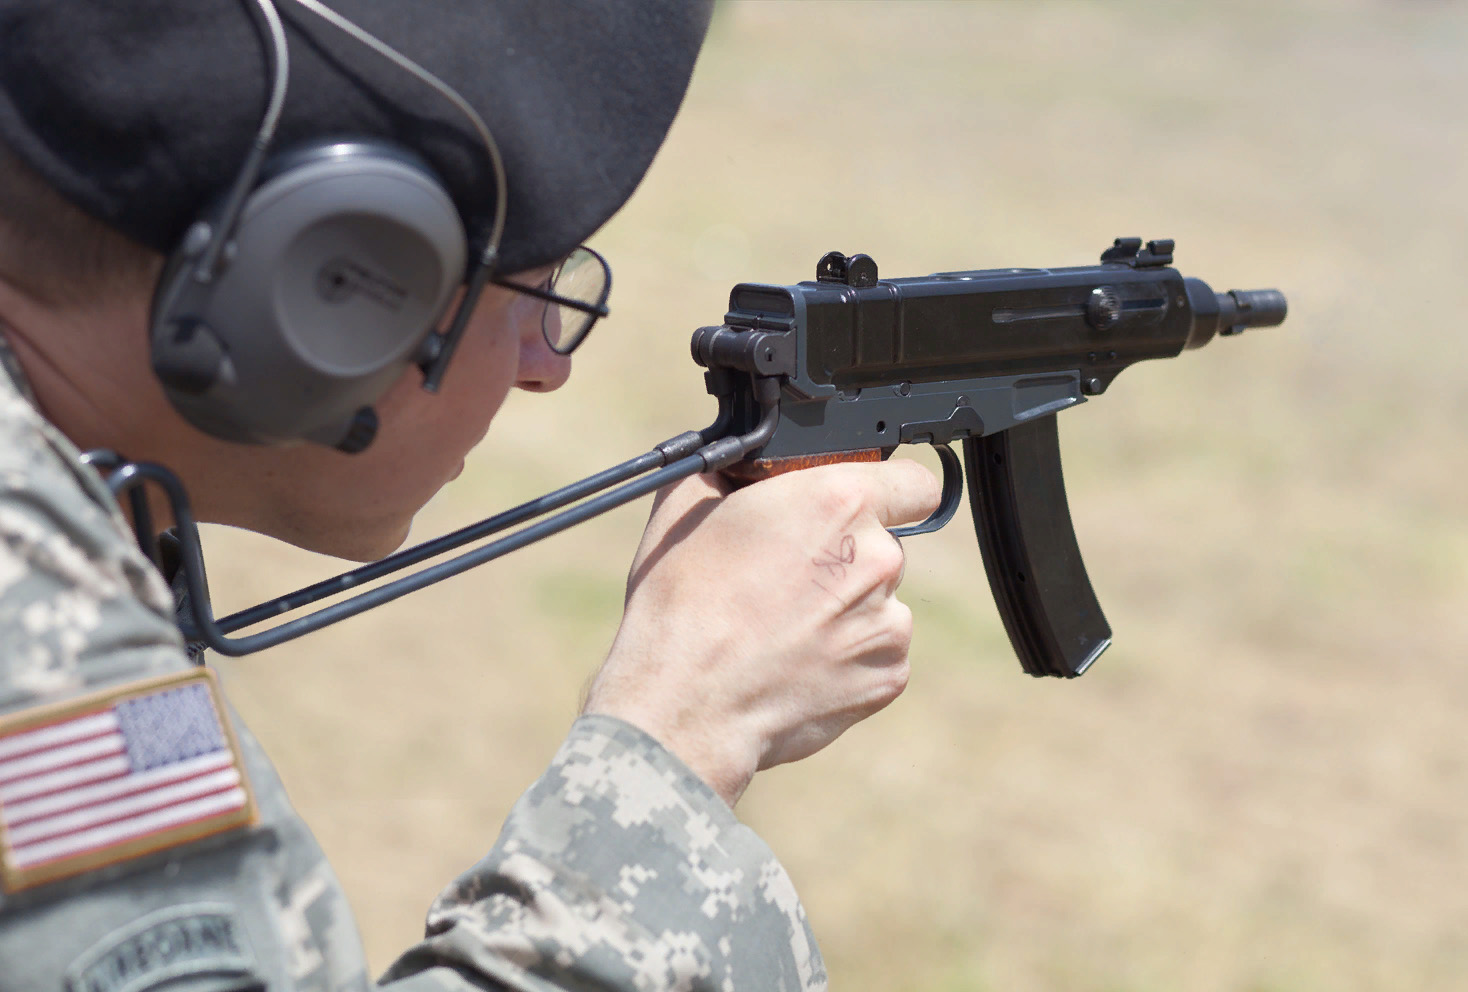 Пистолет-пулемет "Скорпион" Šcorpion vz. 61 у американского военного